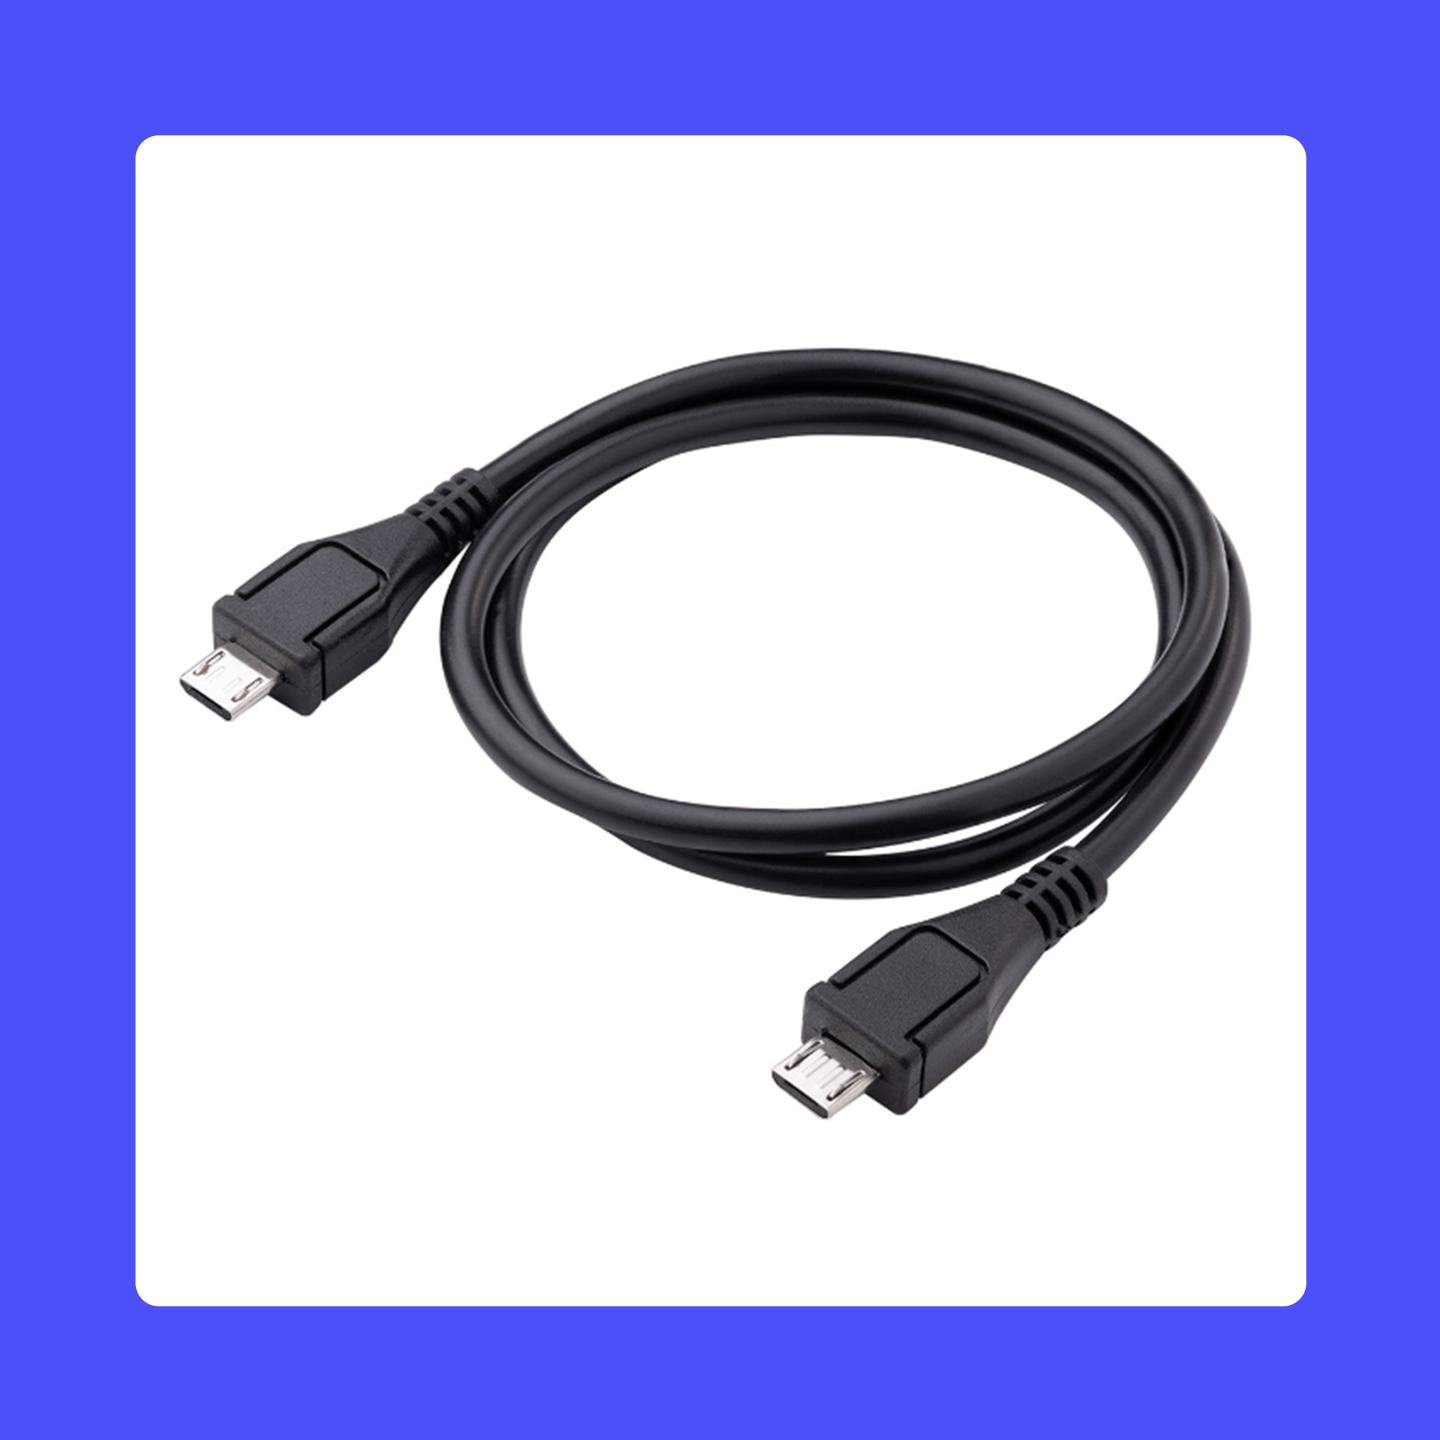 Cable HDMI a Micro HDMI